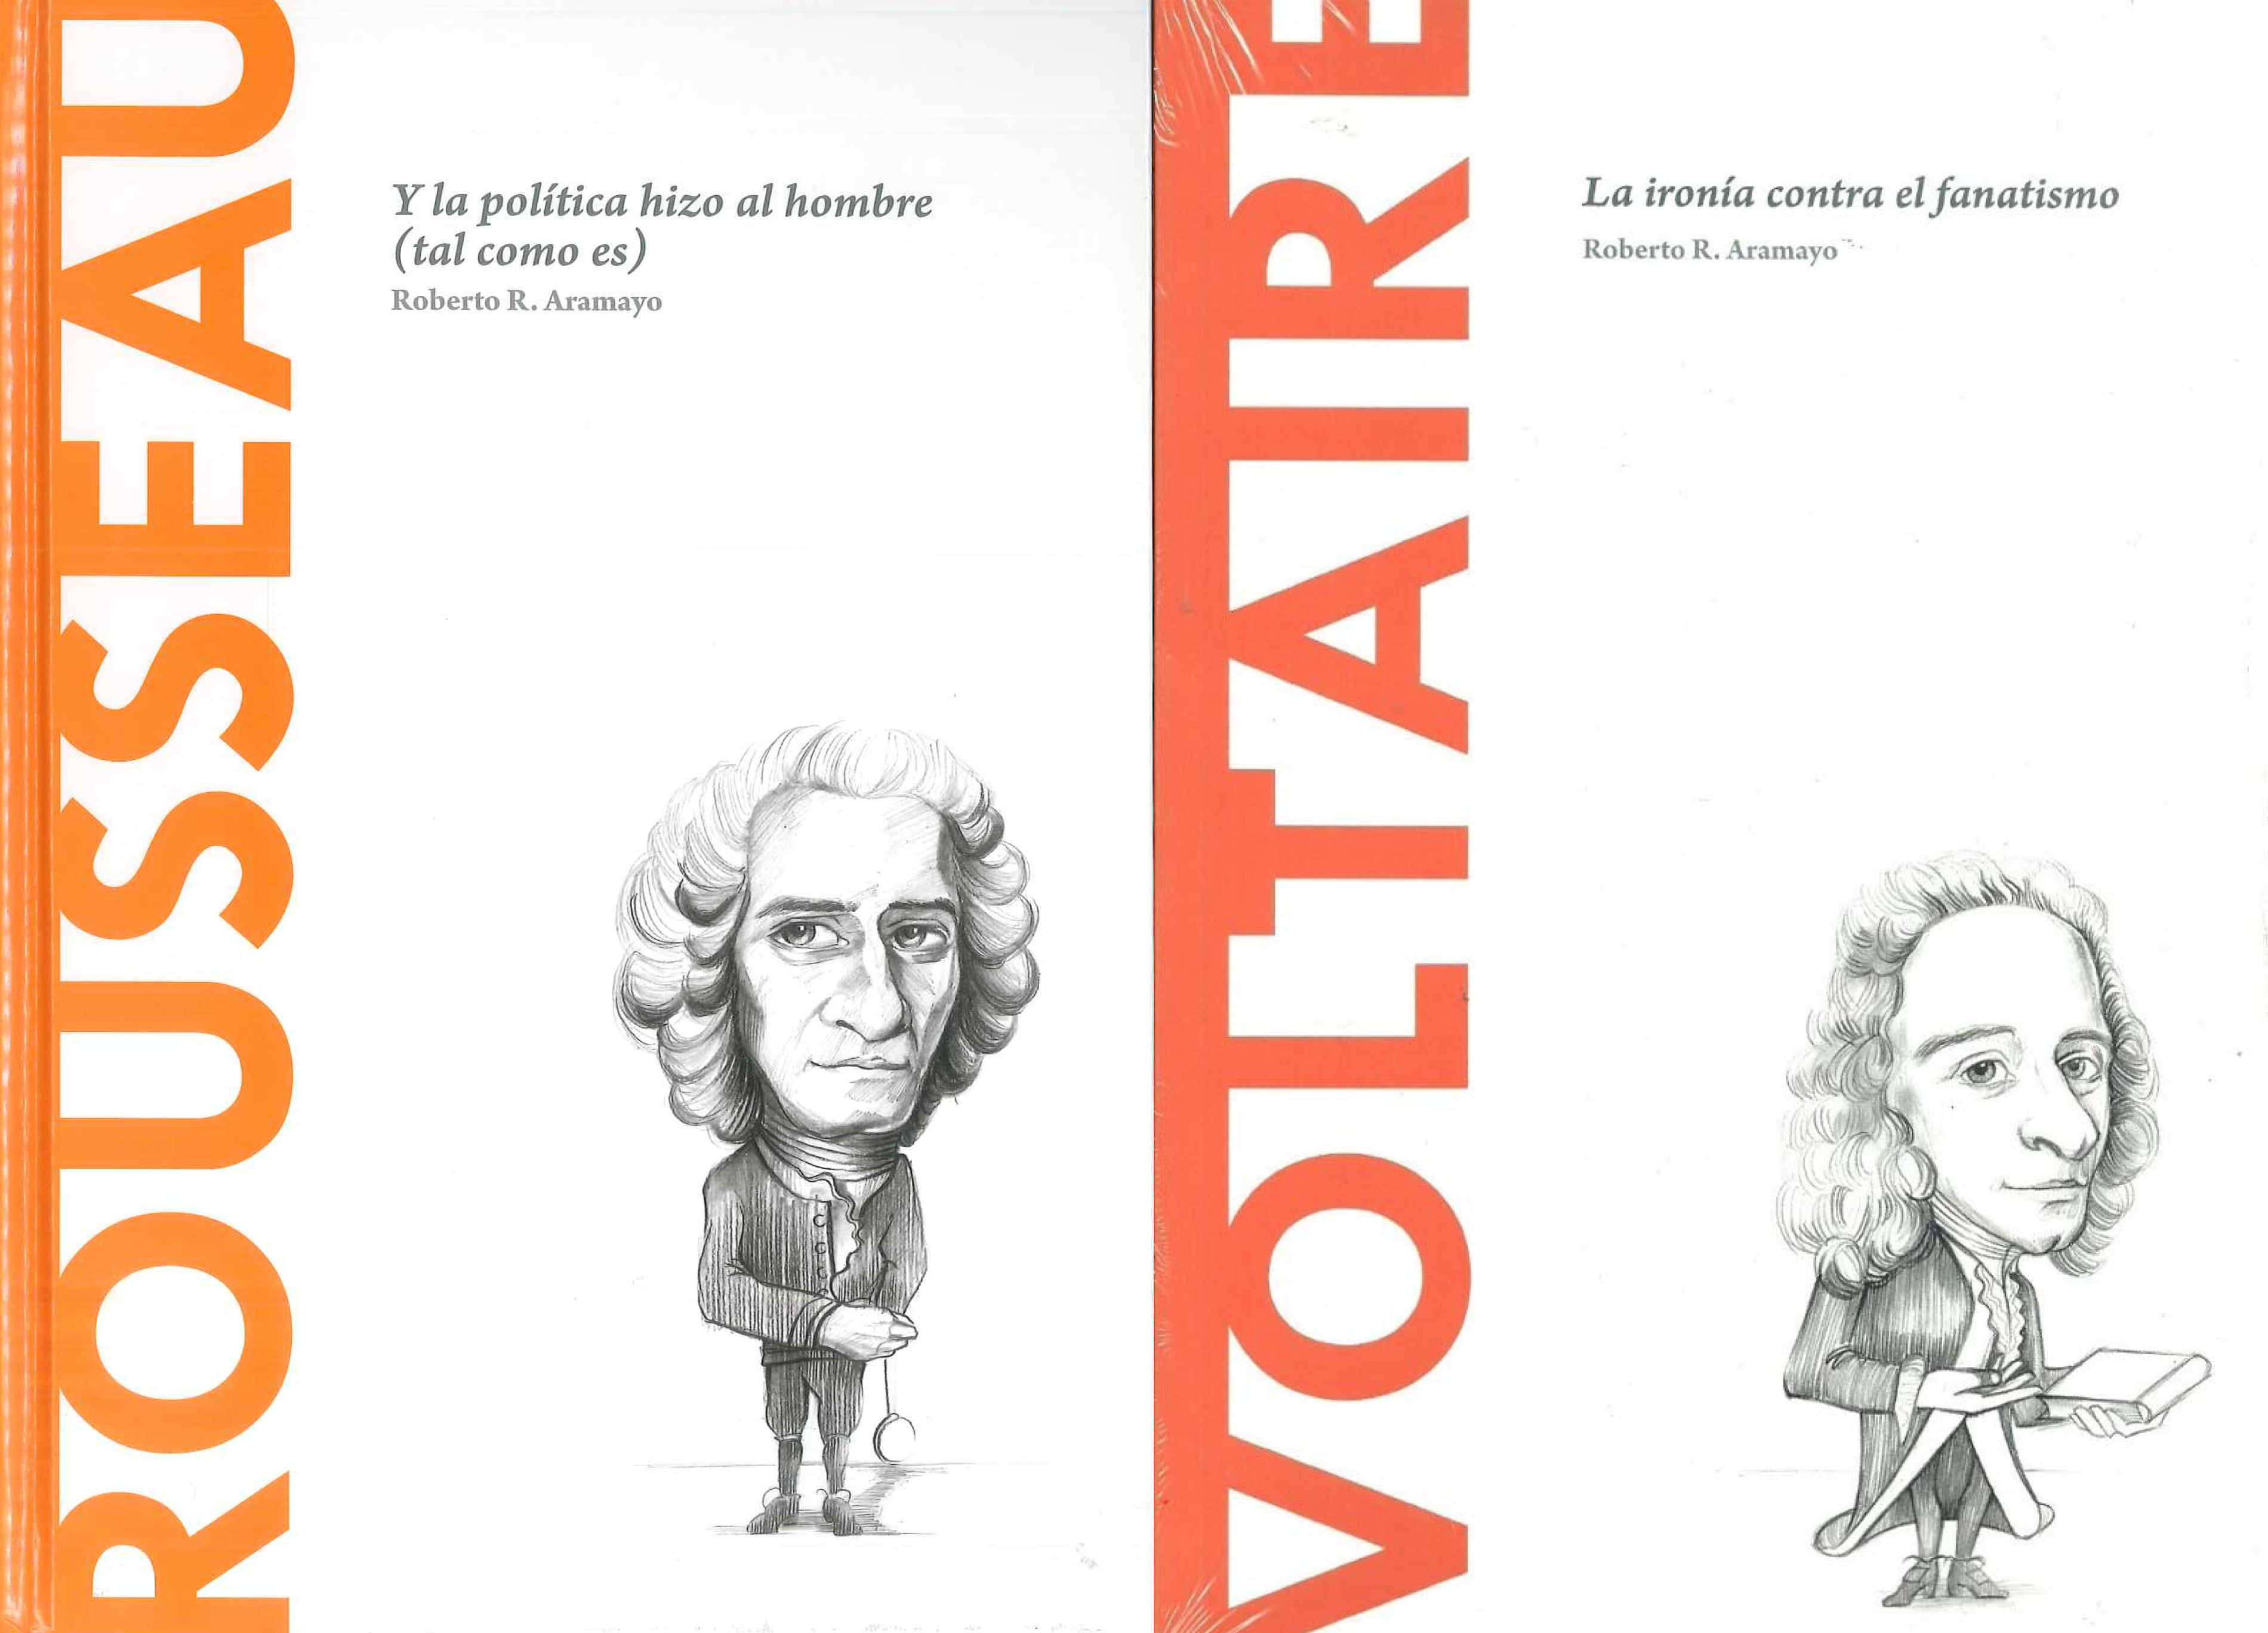 Los libros de Roberto R. Aramayo (IFS) "Rousseau" y "Voltaire" traducidos al flamenco